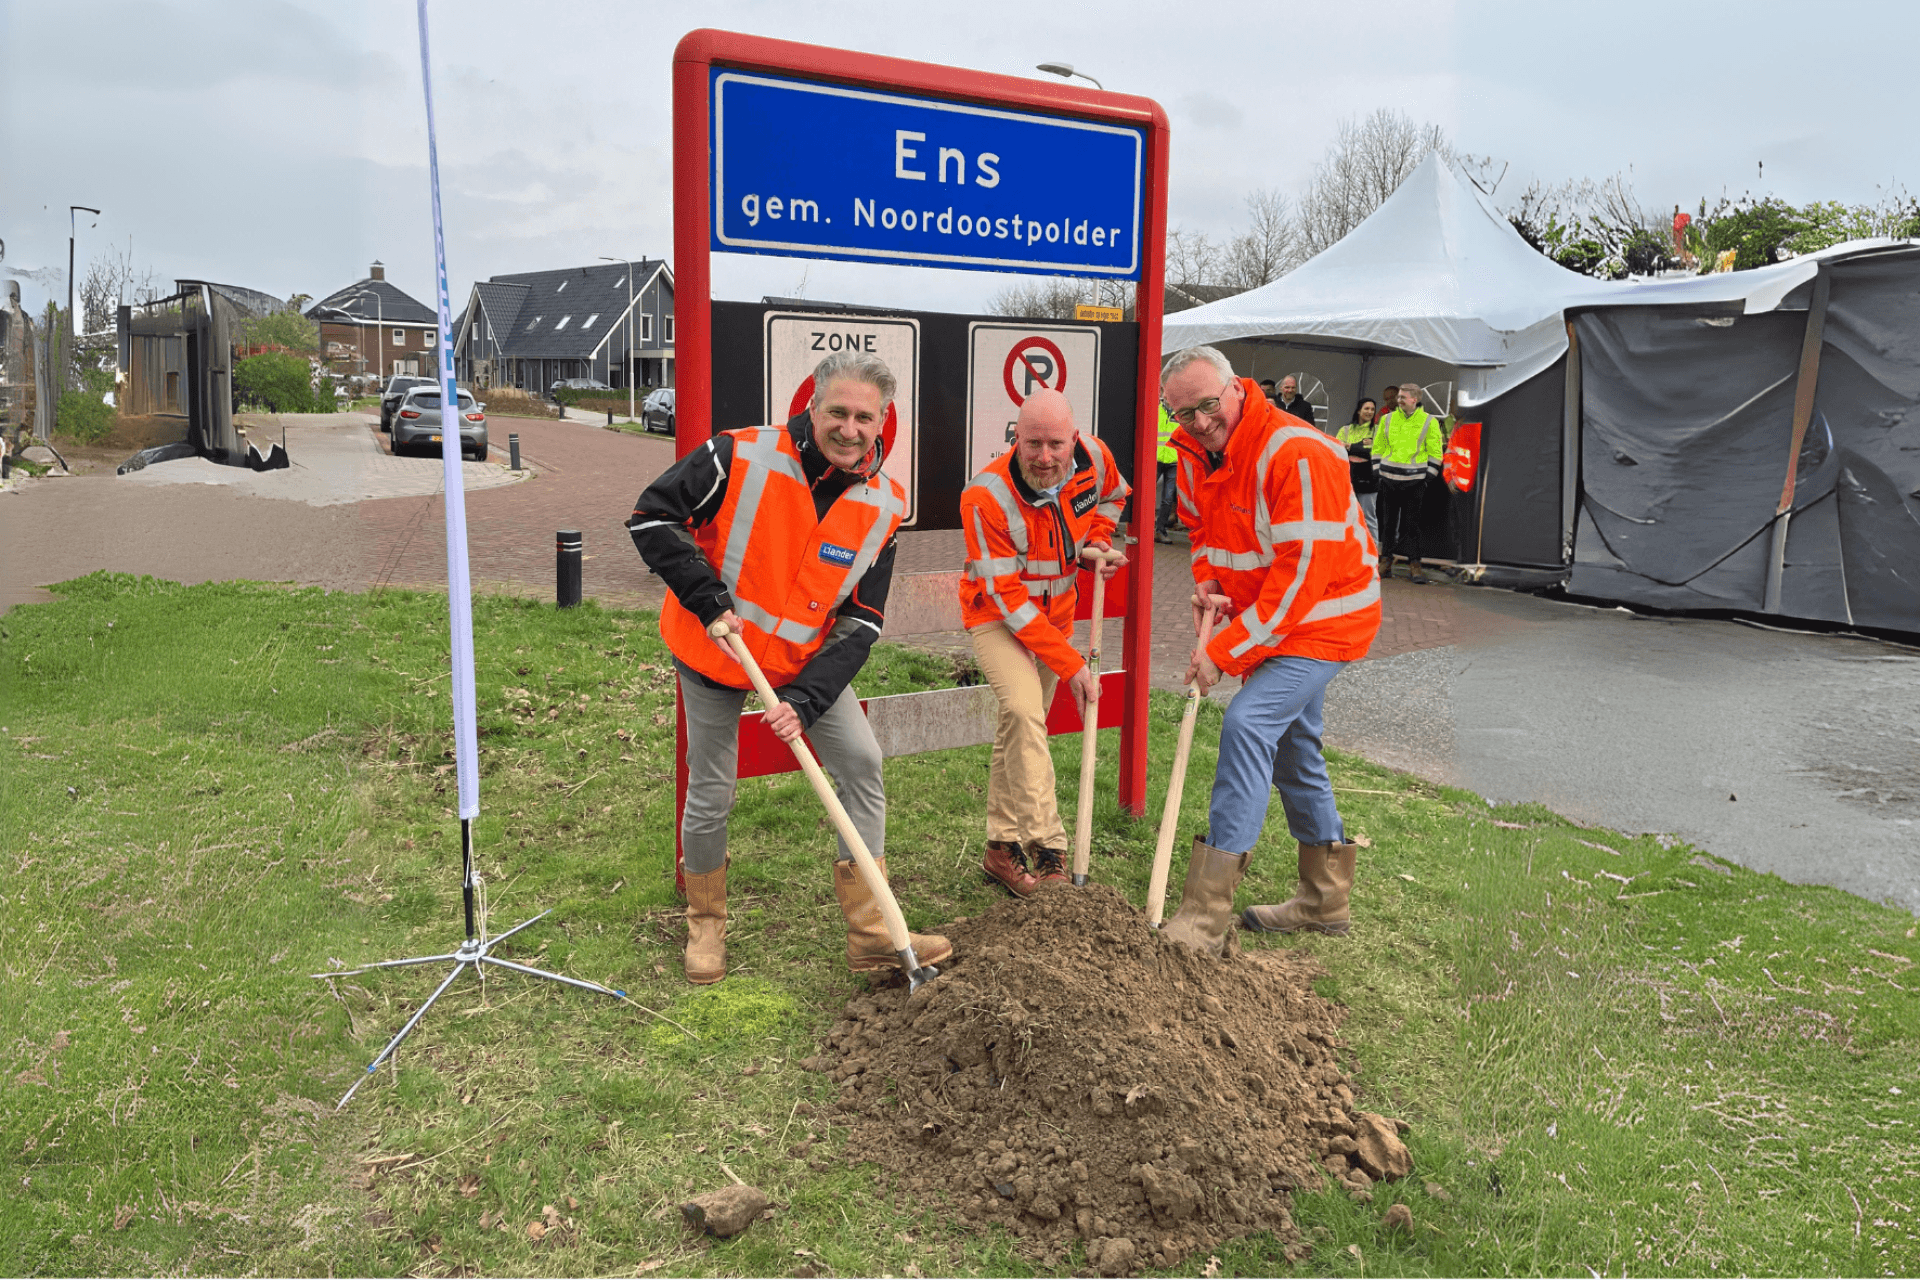 Wethouder van Amersfoort en 2 aannemers zetten een schep in de grond aan de Drietorensweg in Ens. Op de achtergrond het bord bij de ingang van Ens.